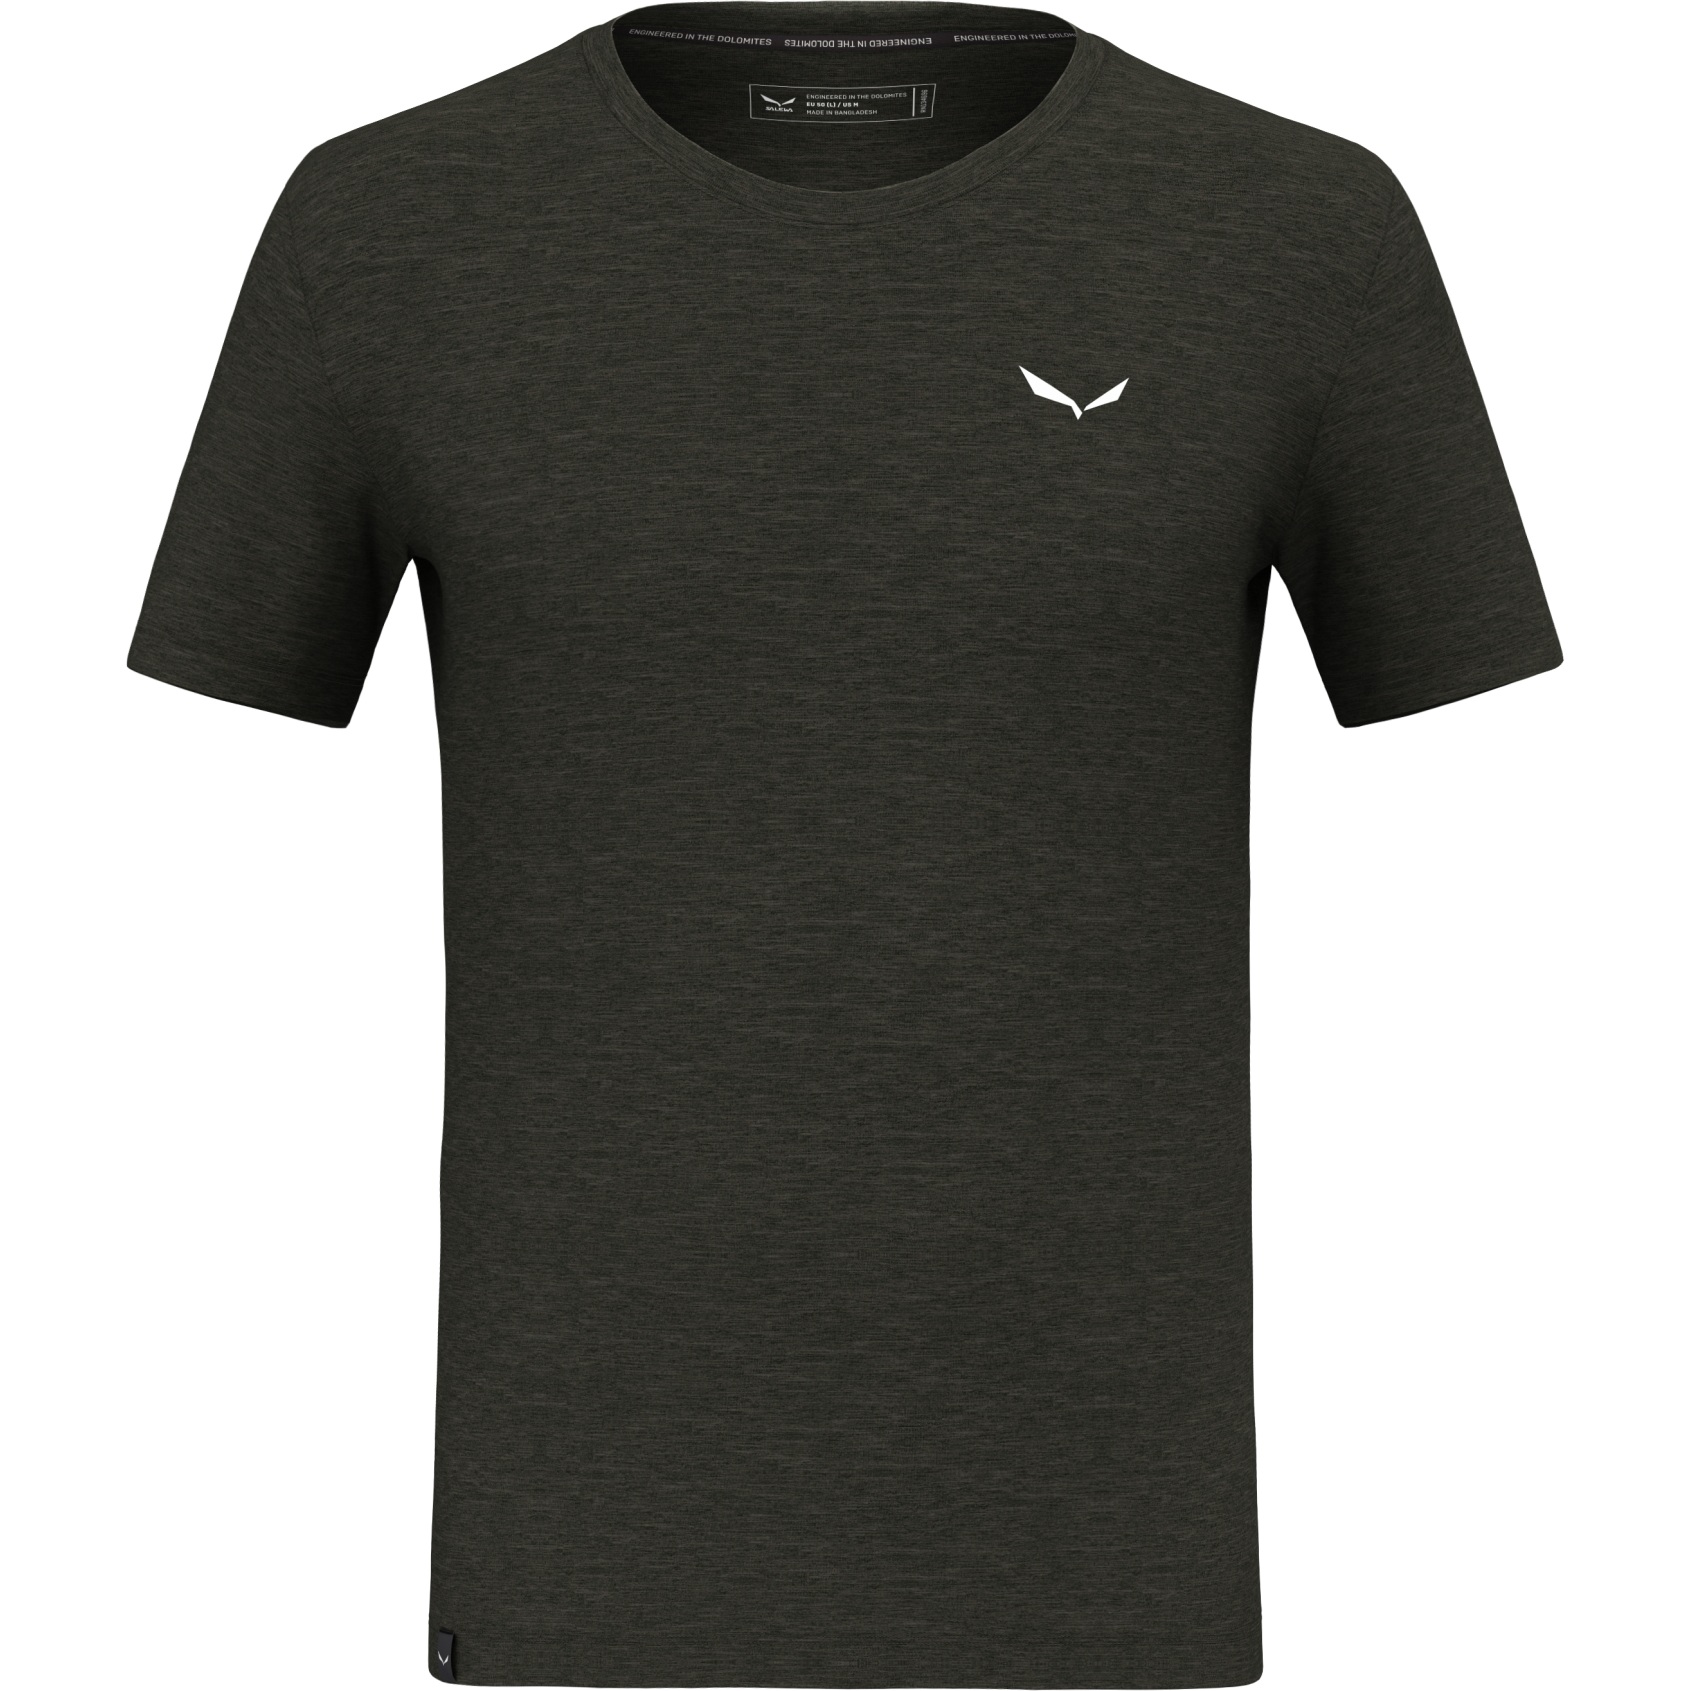 Produktbild von Salewa Eagle Minilogo Alpine Merino T-Shirt Herren - dark olive 5280